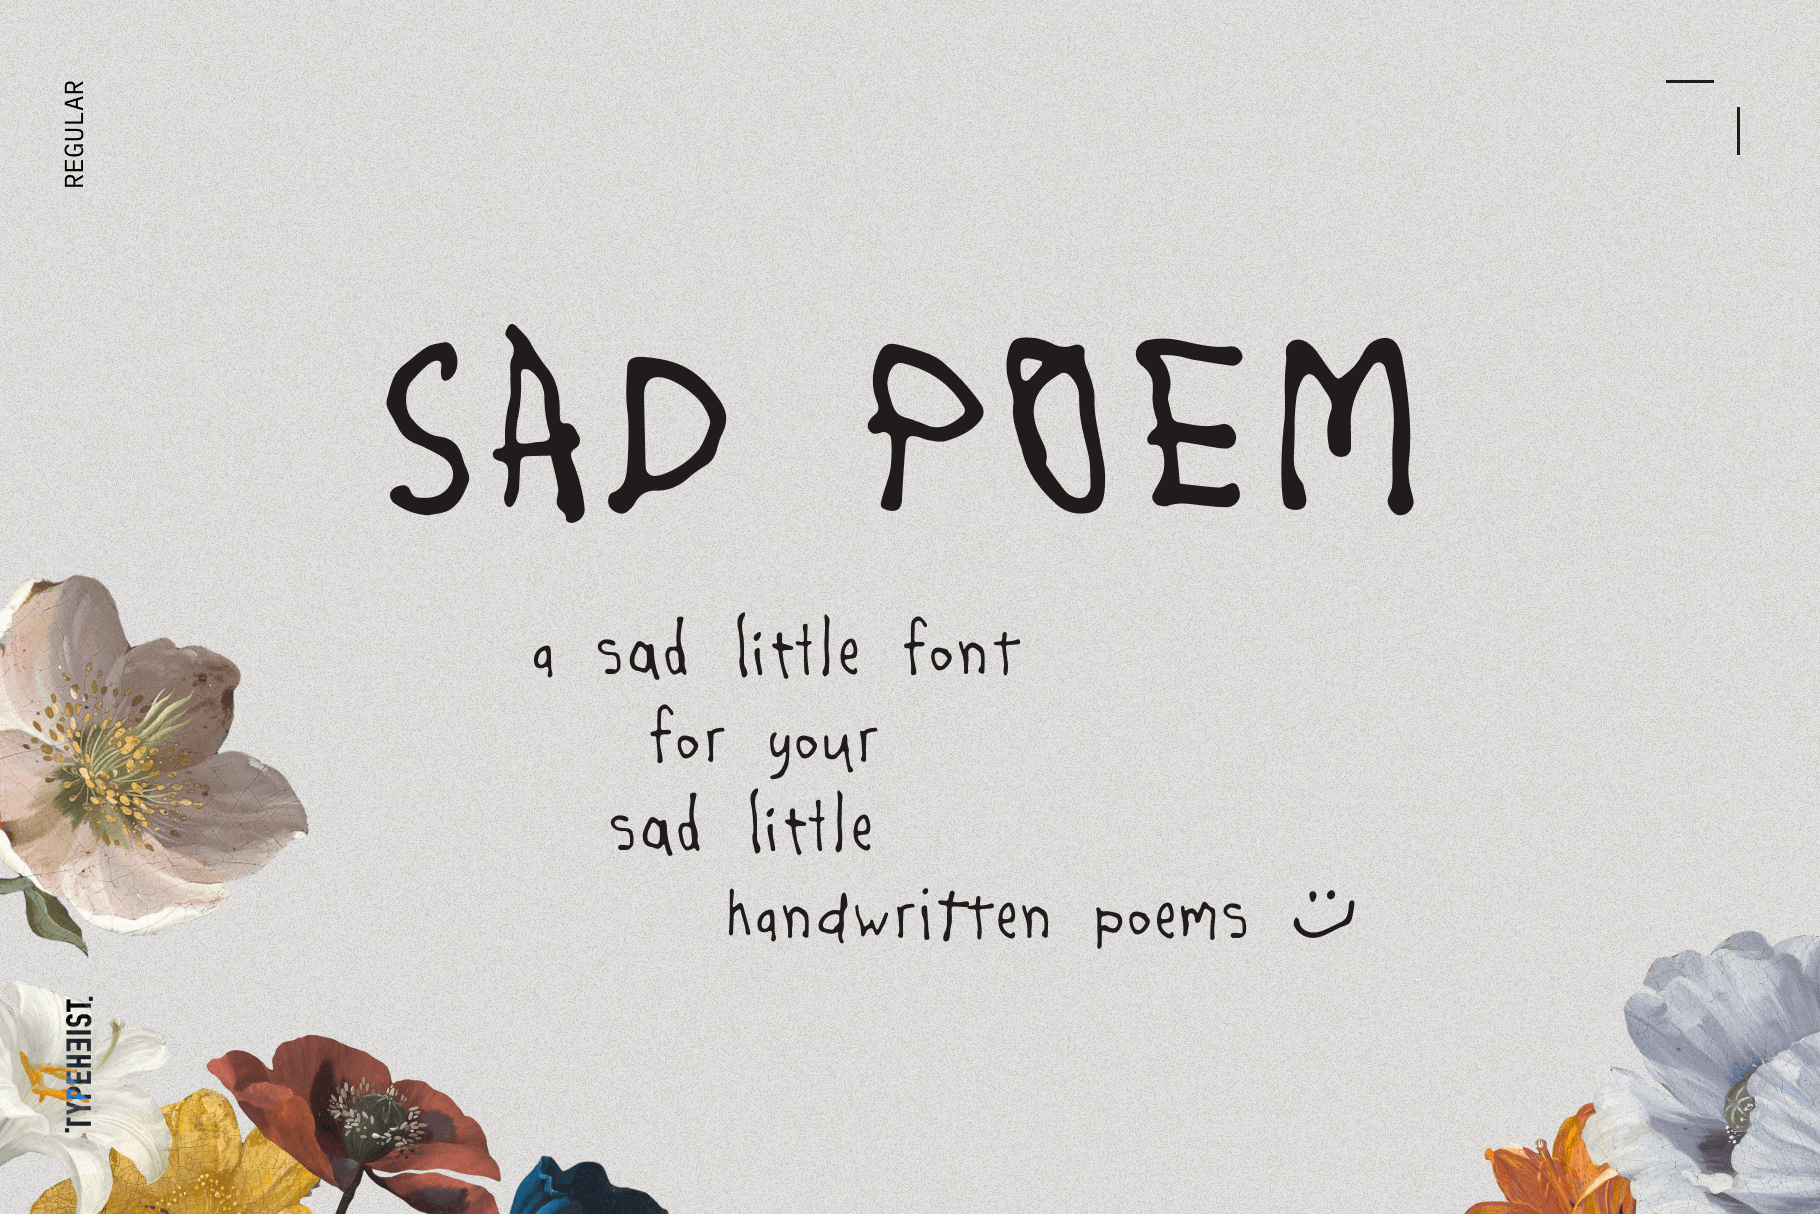 Sad Poem